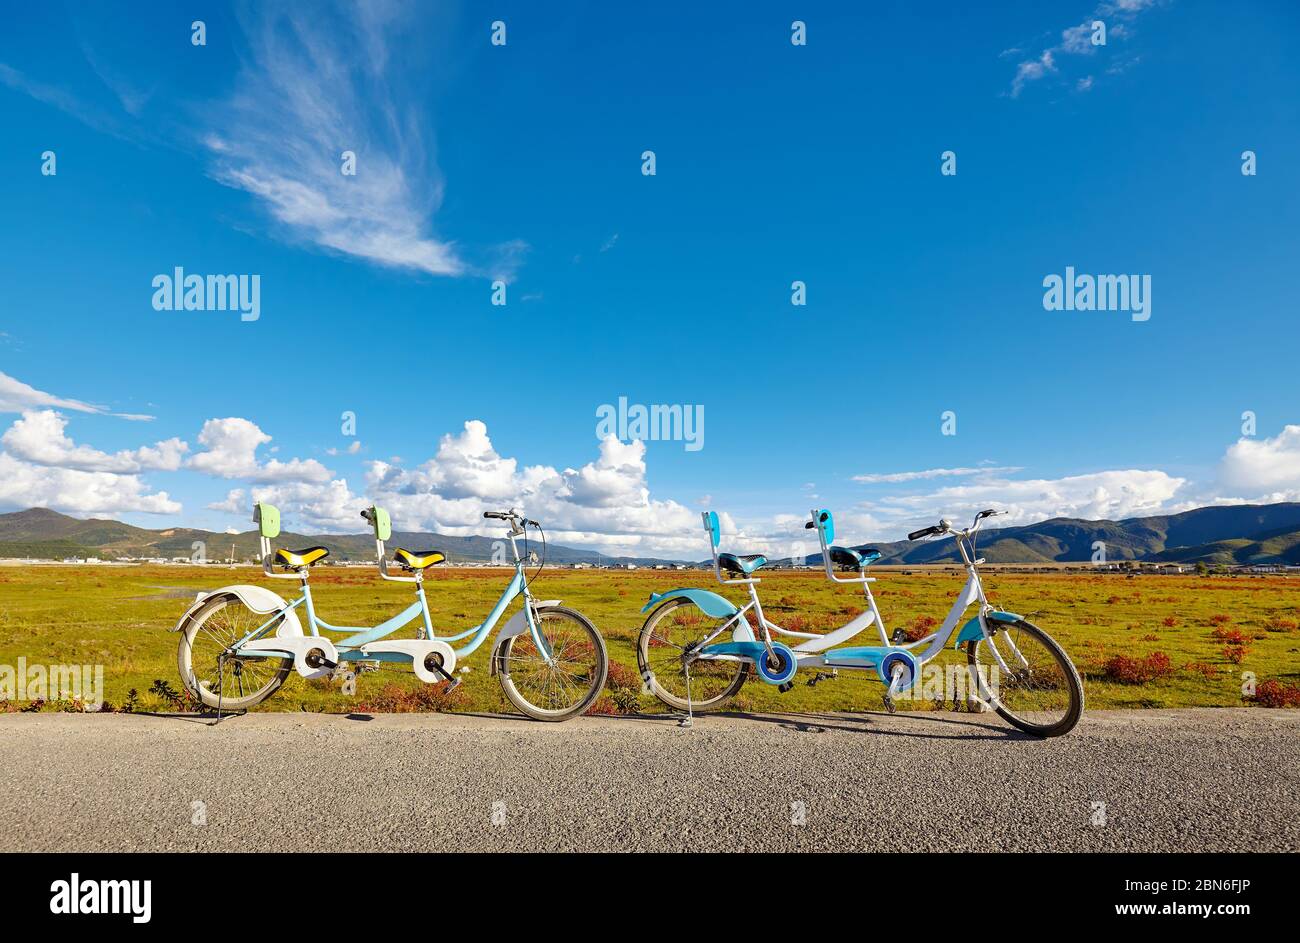 Zwei Tandem-Fahrräder an einer Landstraße an einem sonnigen Tag, Sommer aktiv Urlaub Konzept. Stockfoto